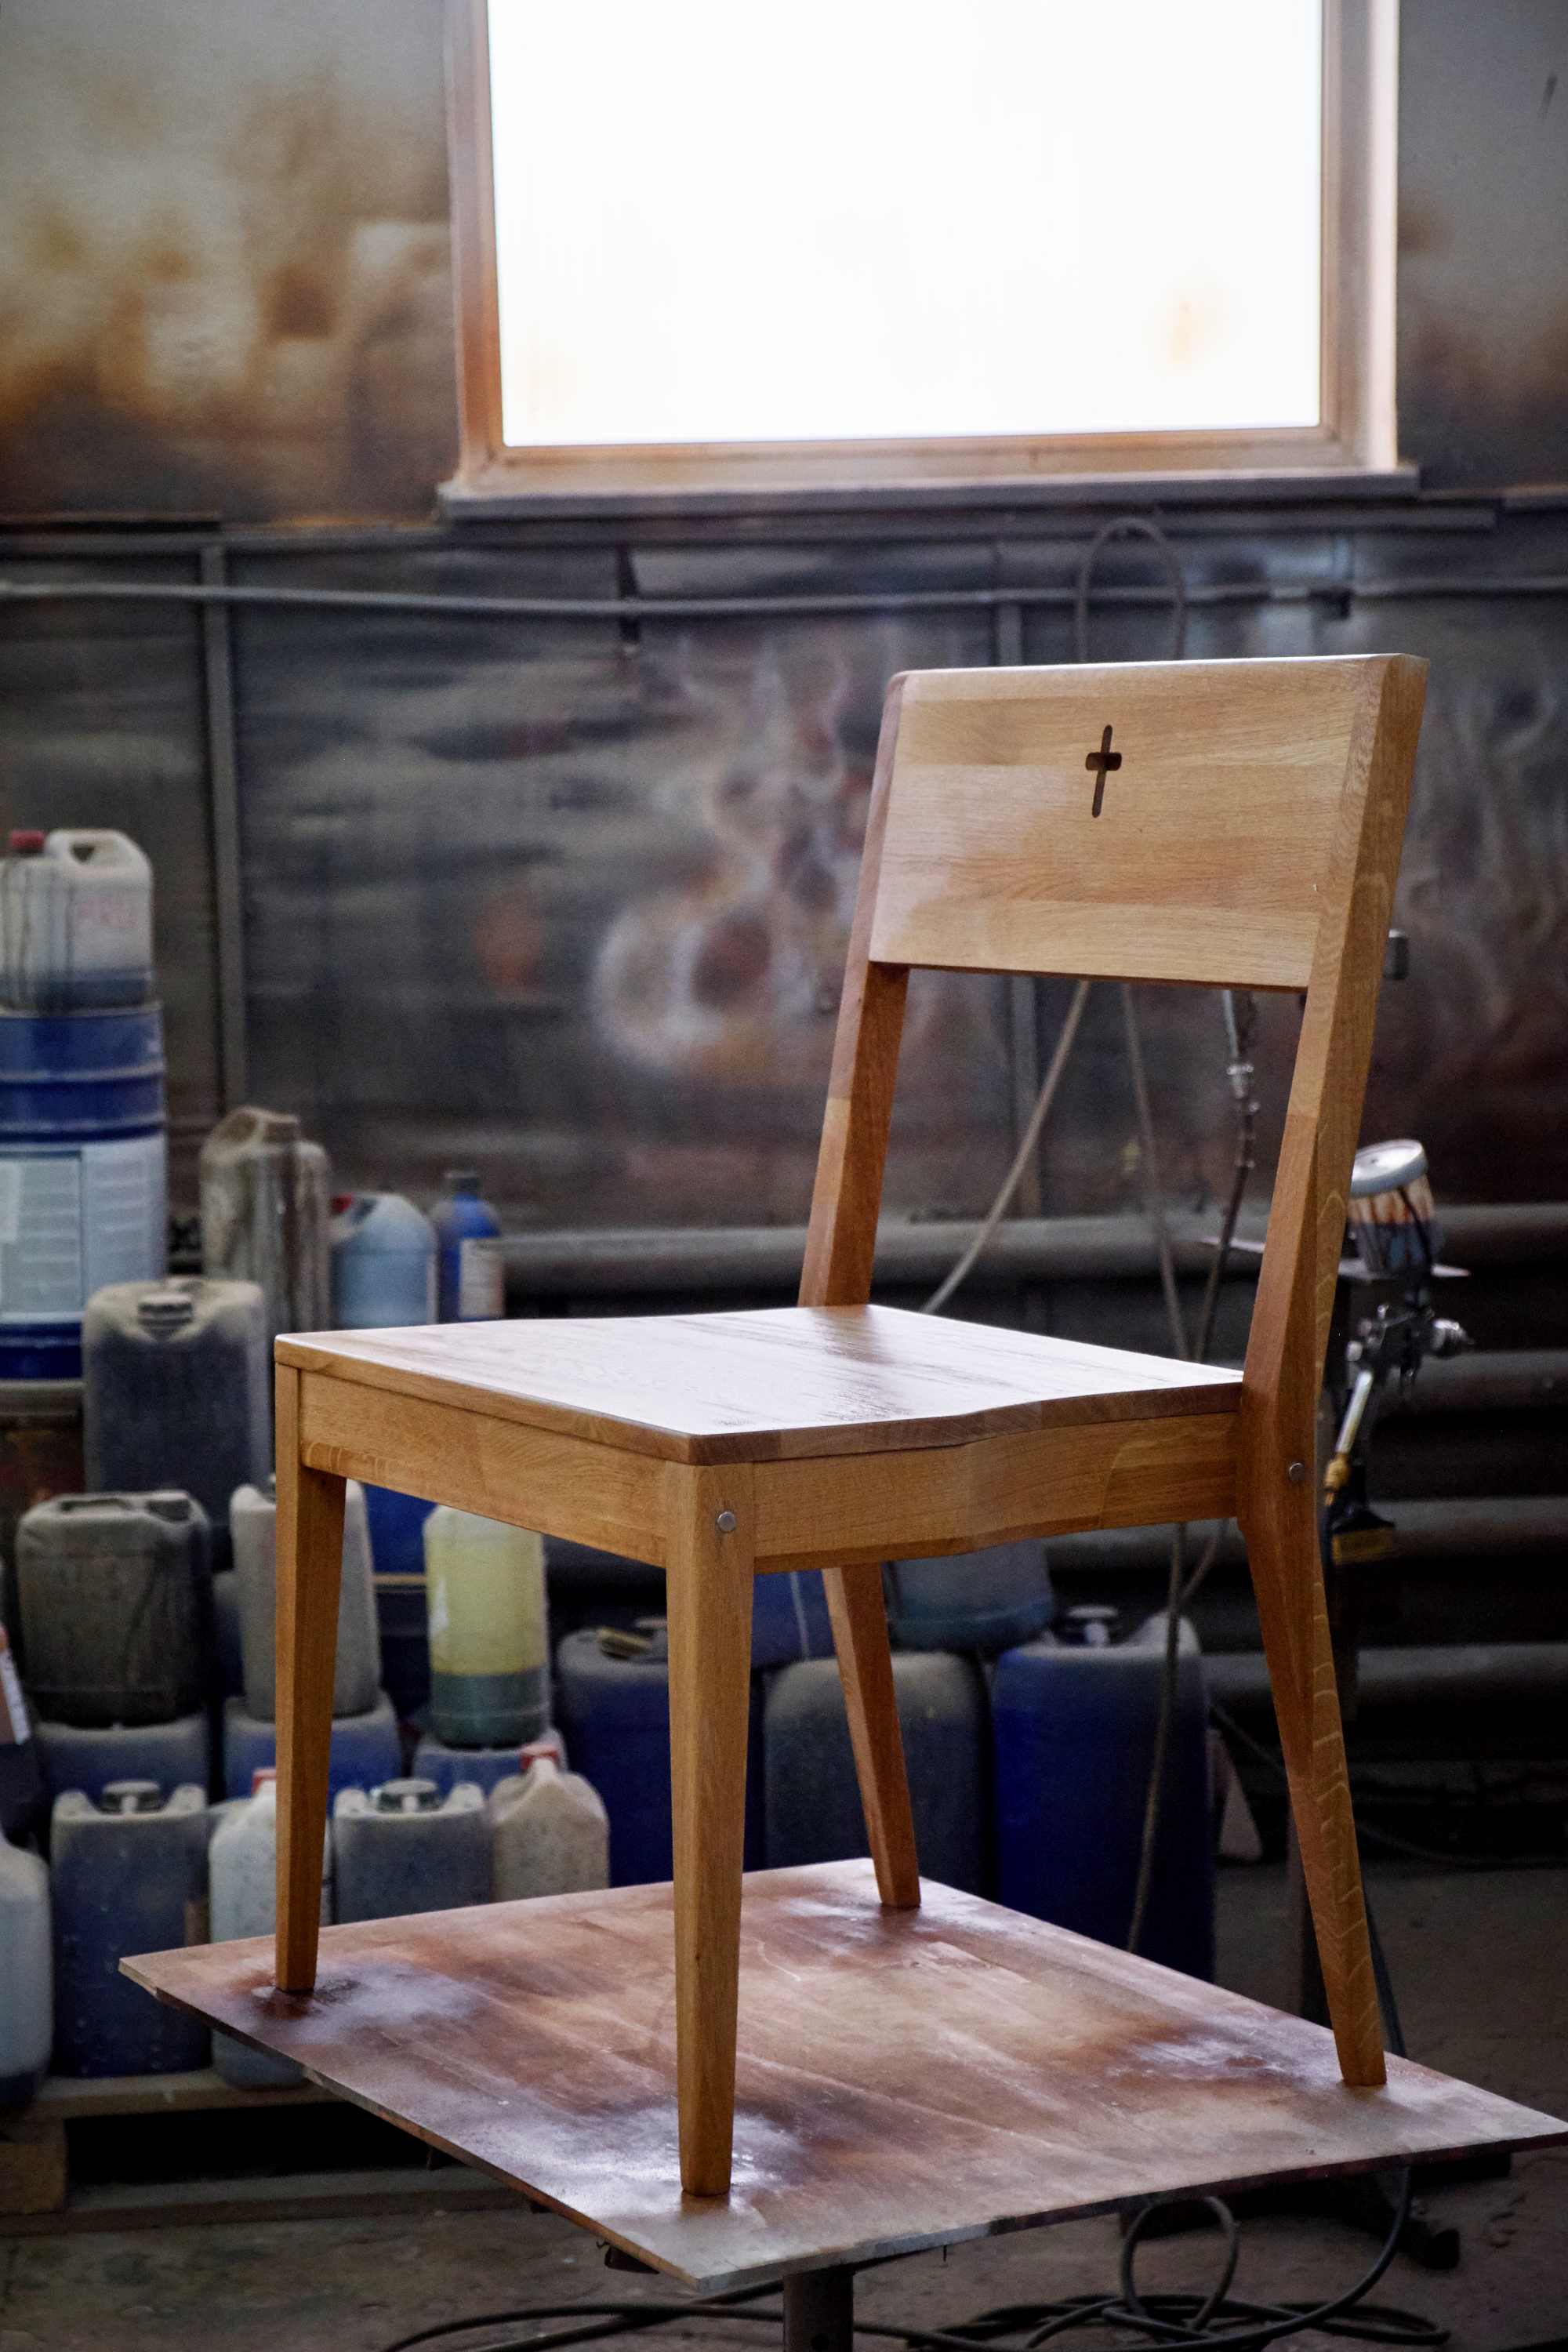 Gotowe krzesło kościelne ZOE wykonane z drewna dębowego - ostateczne wyschnięcie po malowaniu